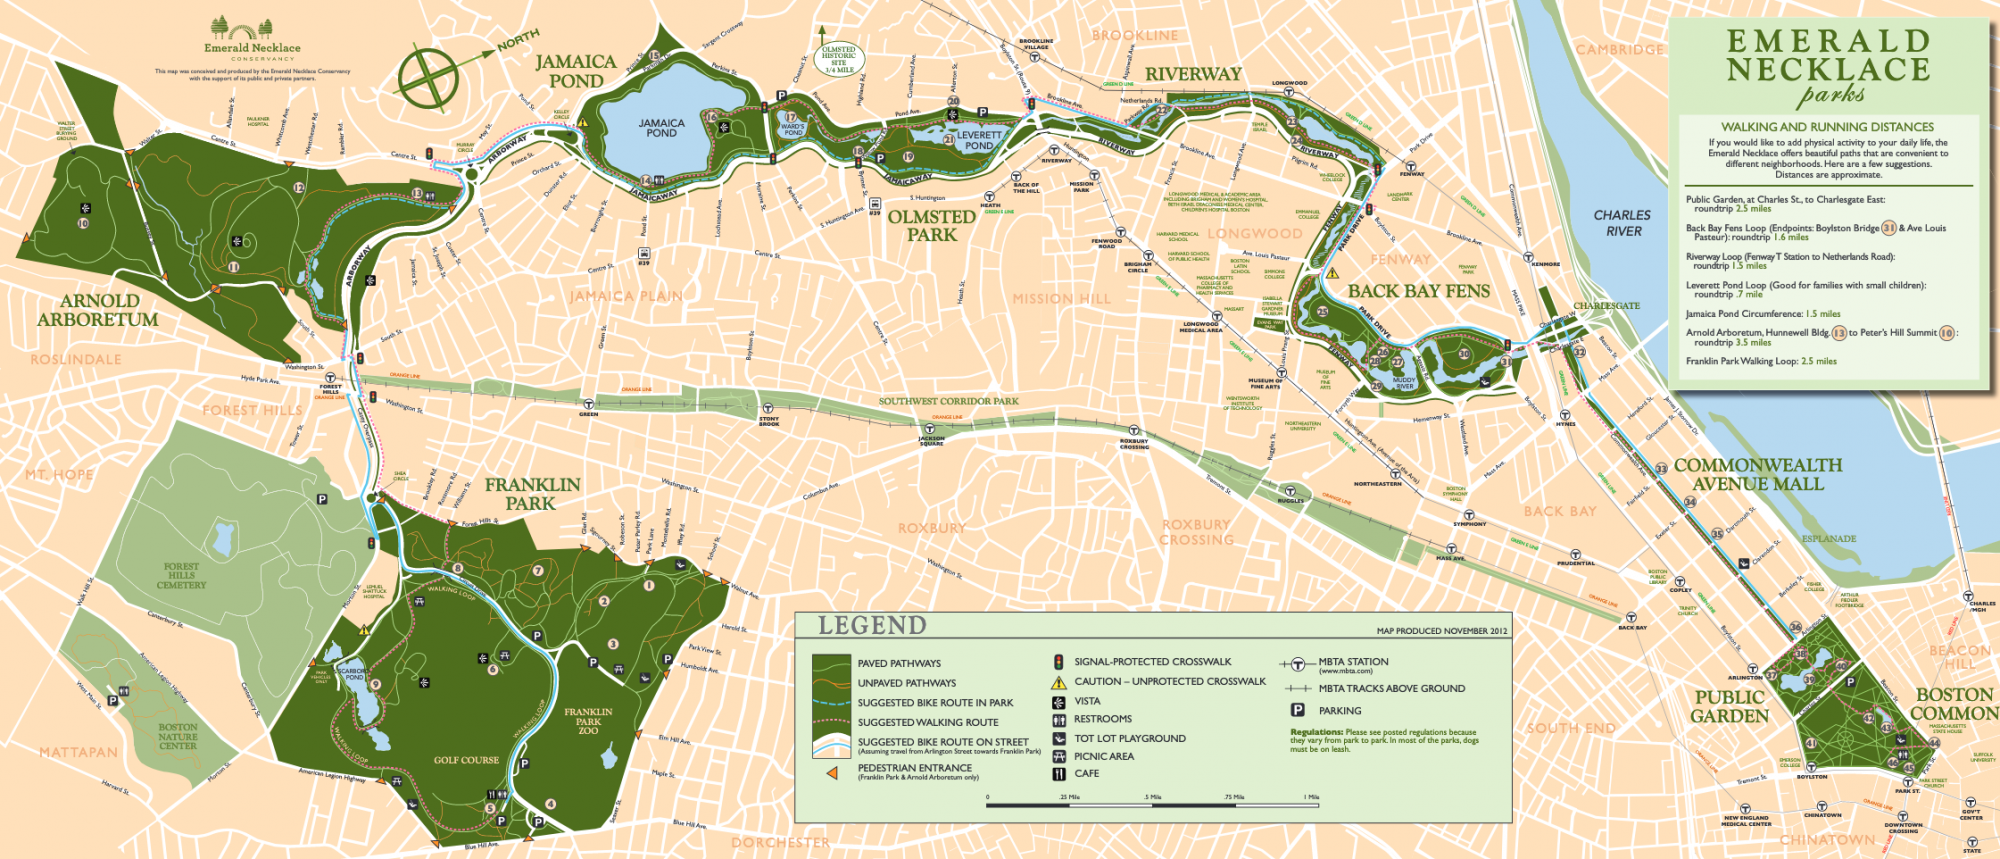 Boston zöldfelületi rendszere: a parkok, mint smaragdzöld ékkövek, nyakláncként egymáshoz fűzve. Az egyes parkok között néhol csak egy-egy keskenyebb víz- és zöldfelület biztosítja a kapcsolatot.